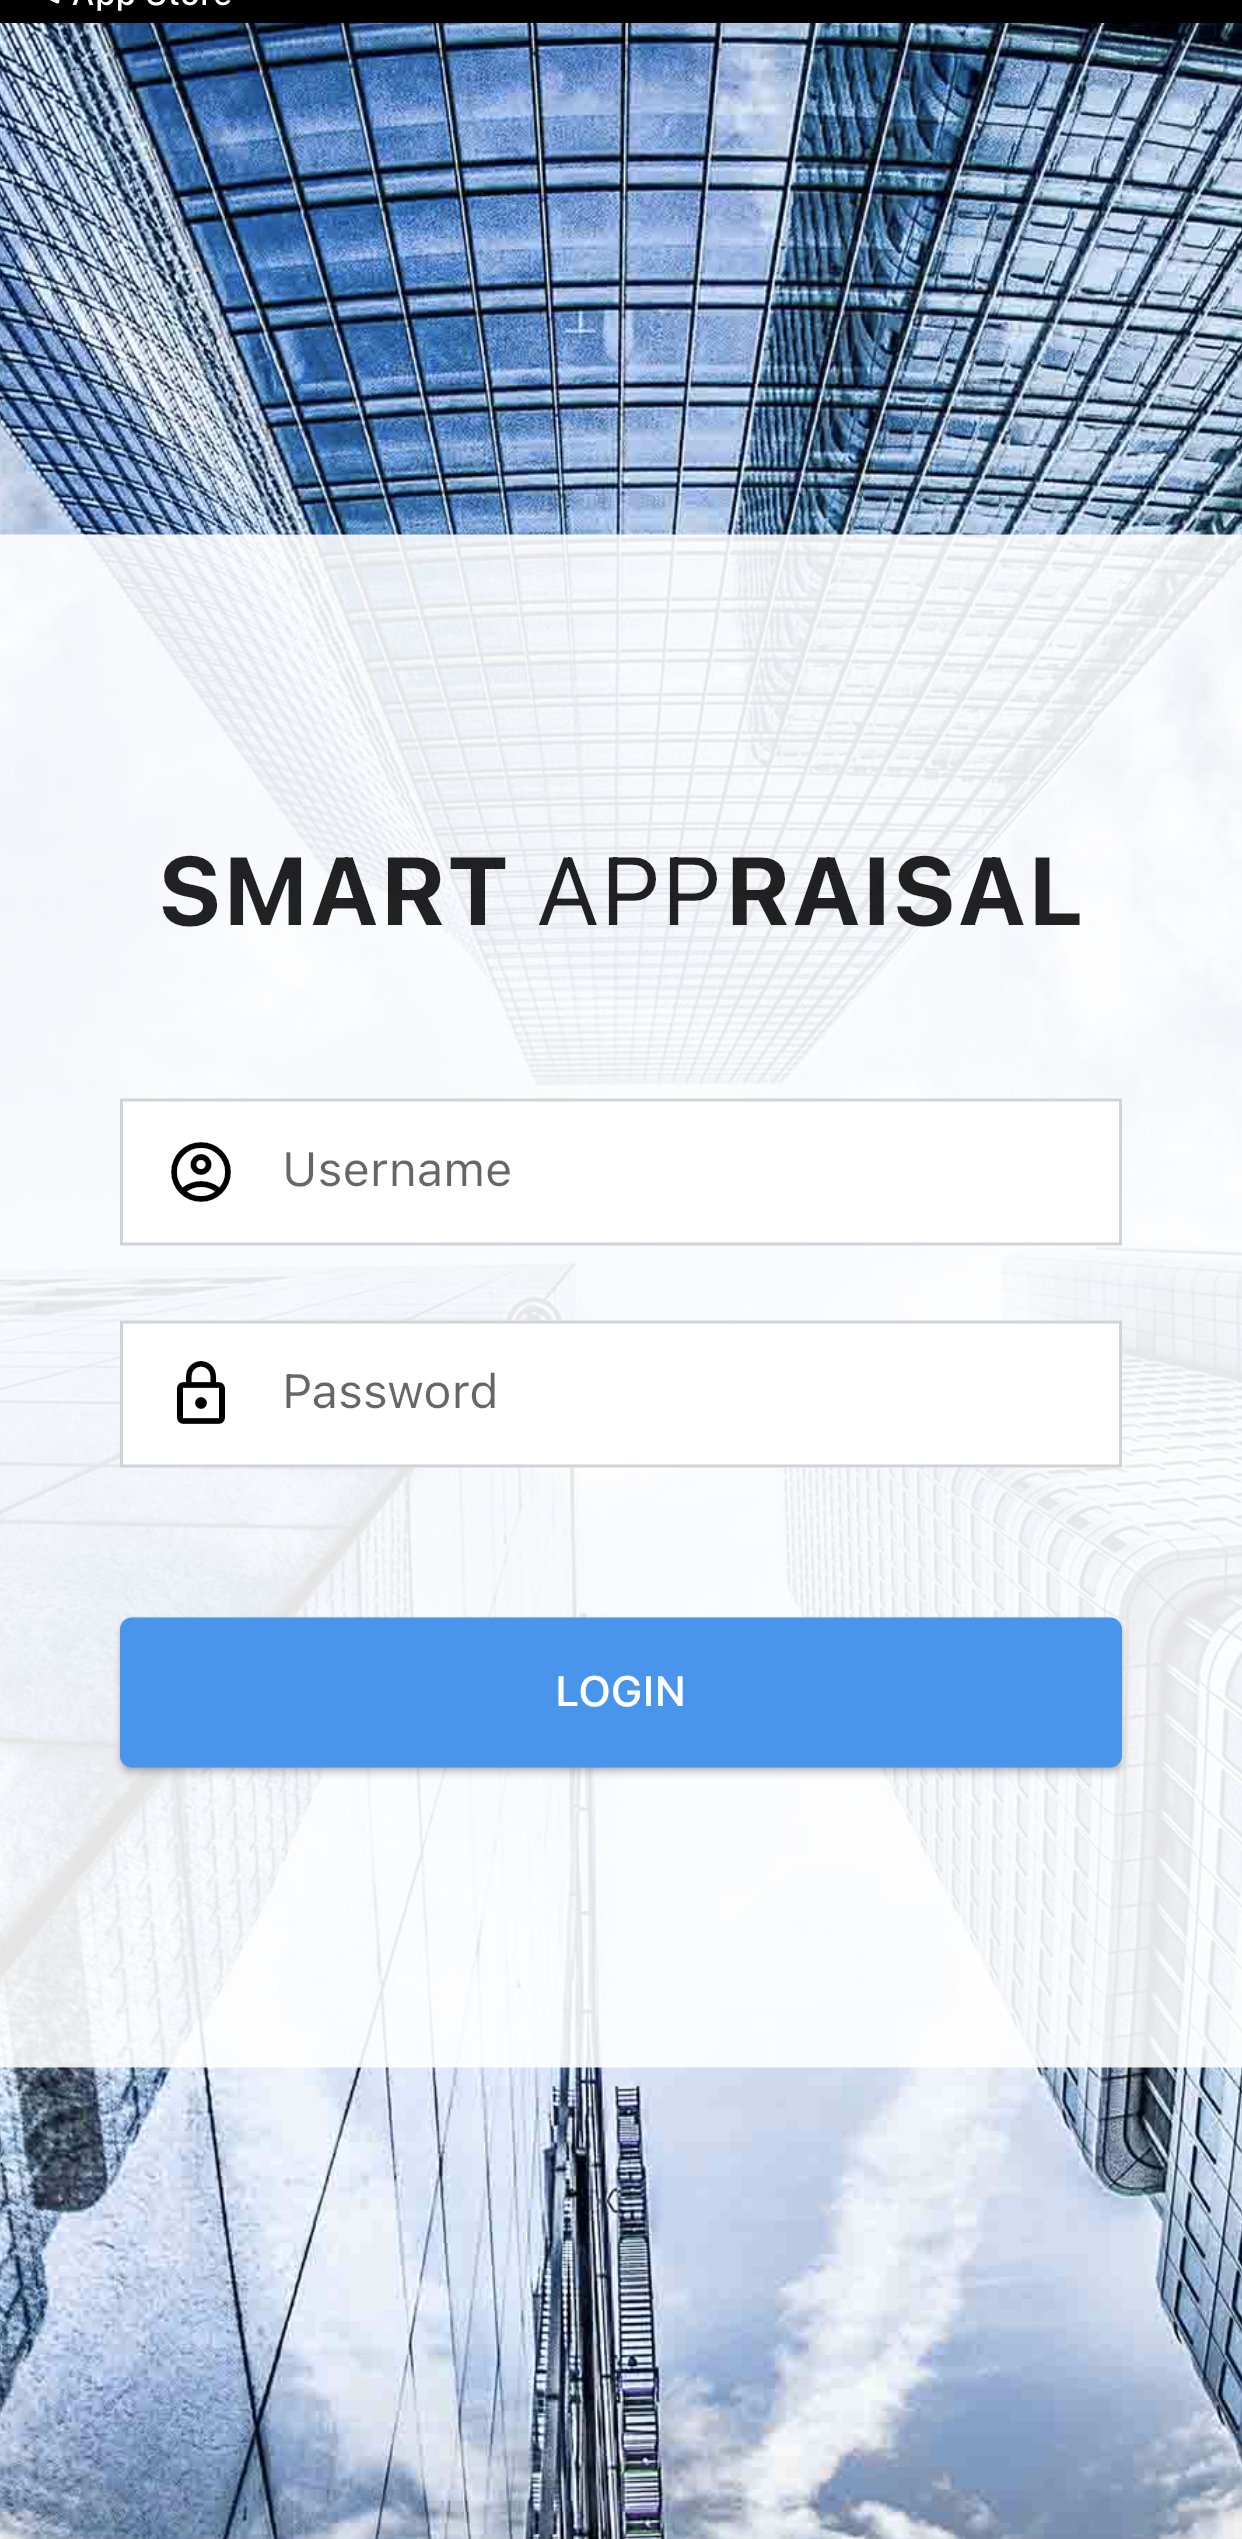 Proptech: Smart Appraisal